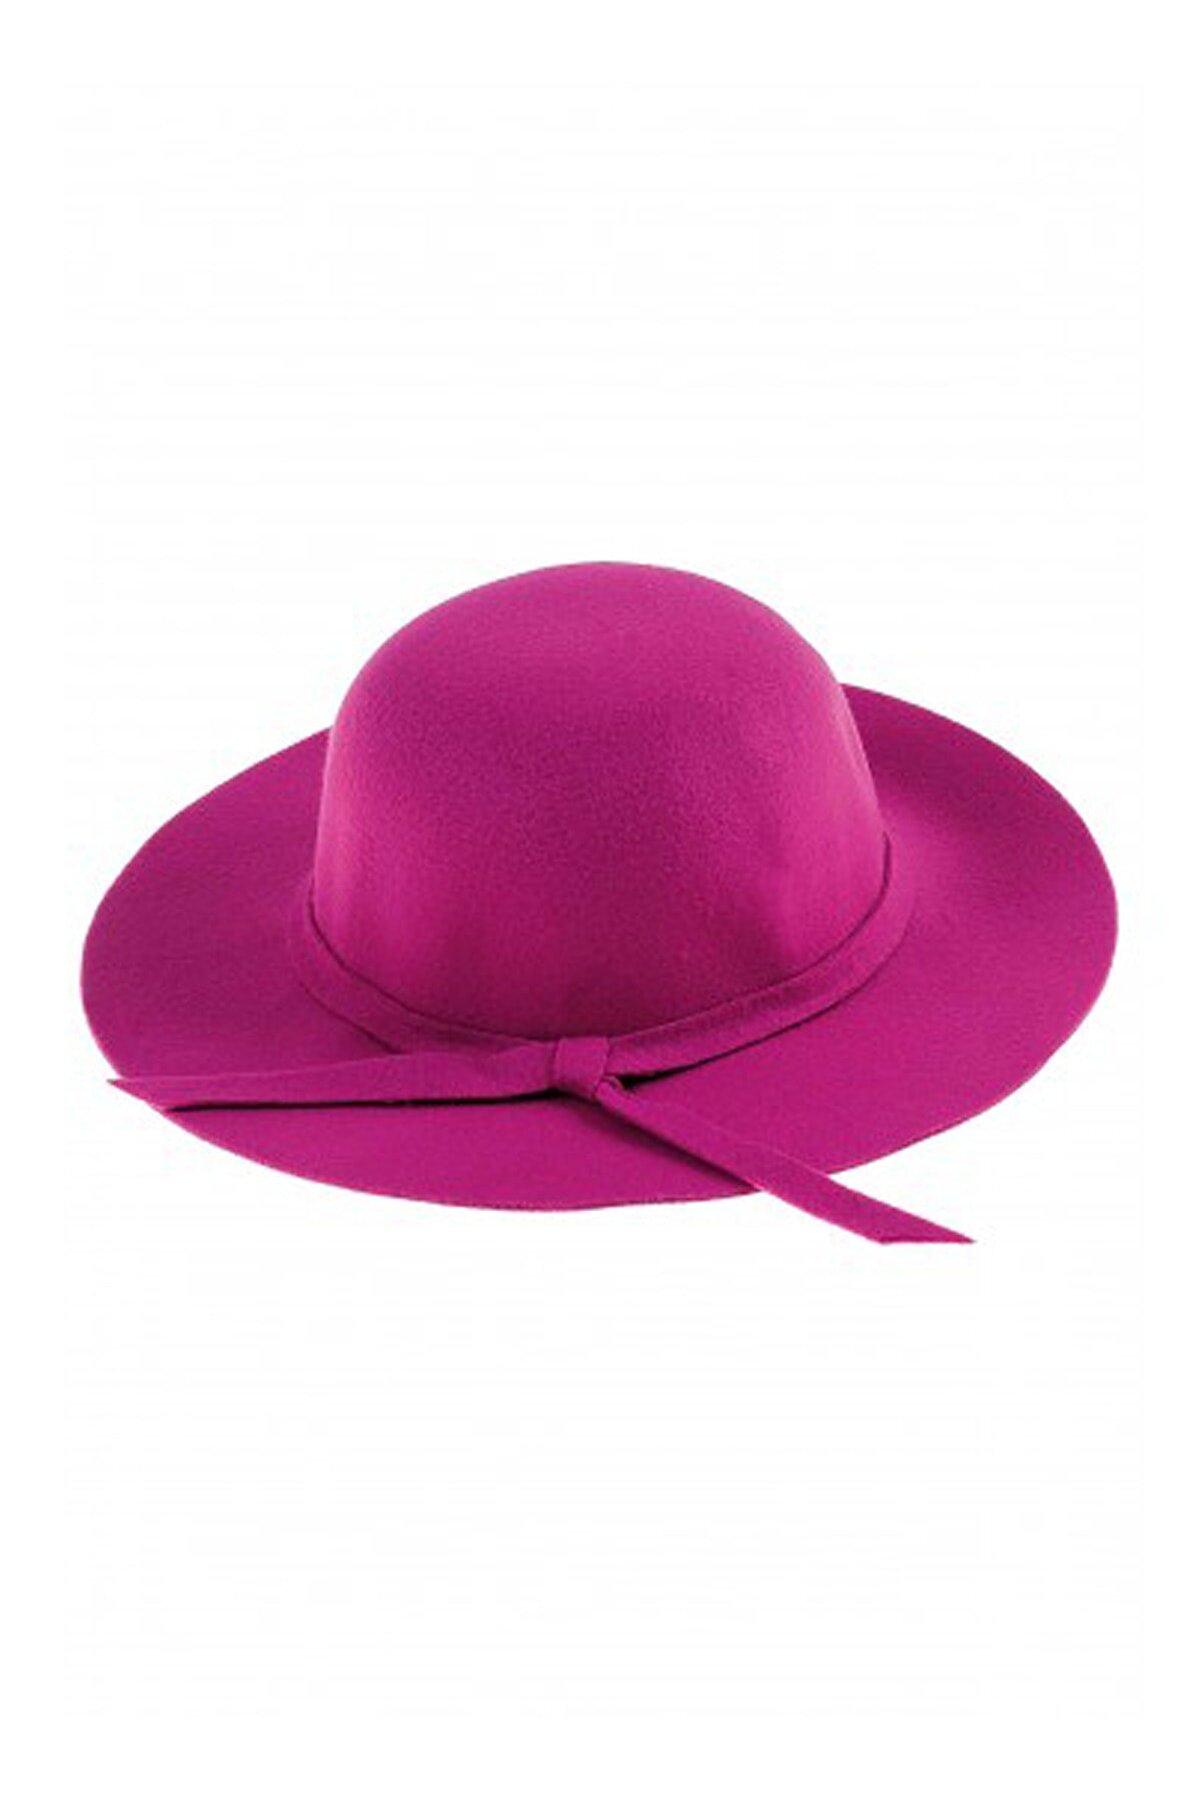 Bay Şapkacı Kız Çocuk Geniş Kenarlı Kaşe Şapka 7168 Fuşya